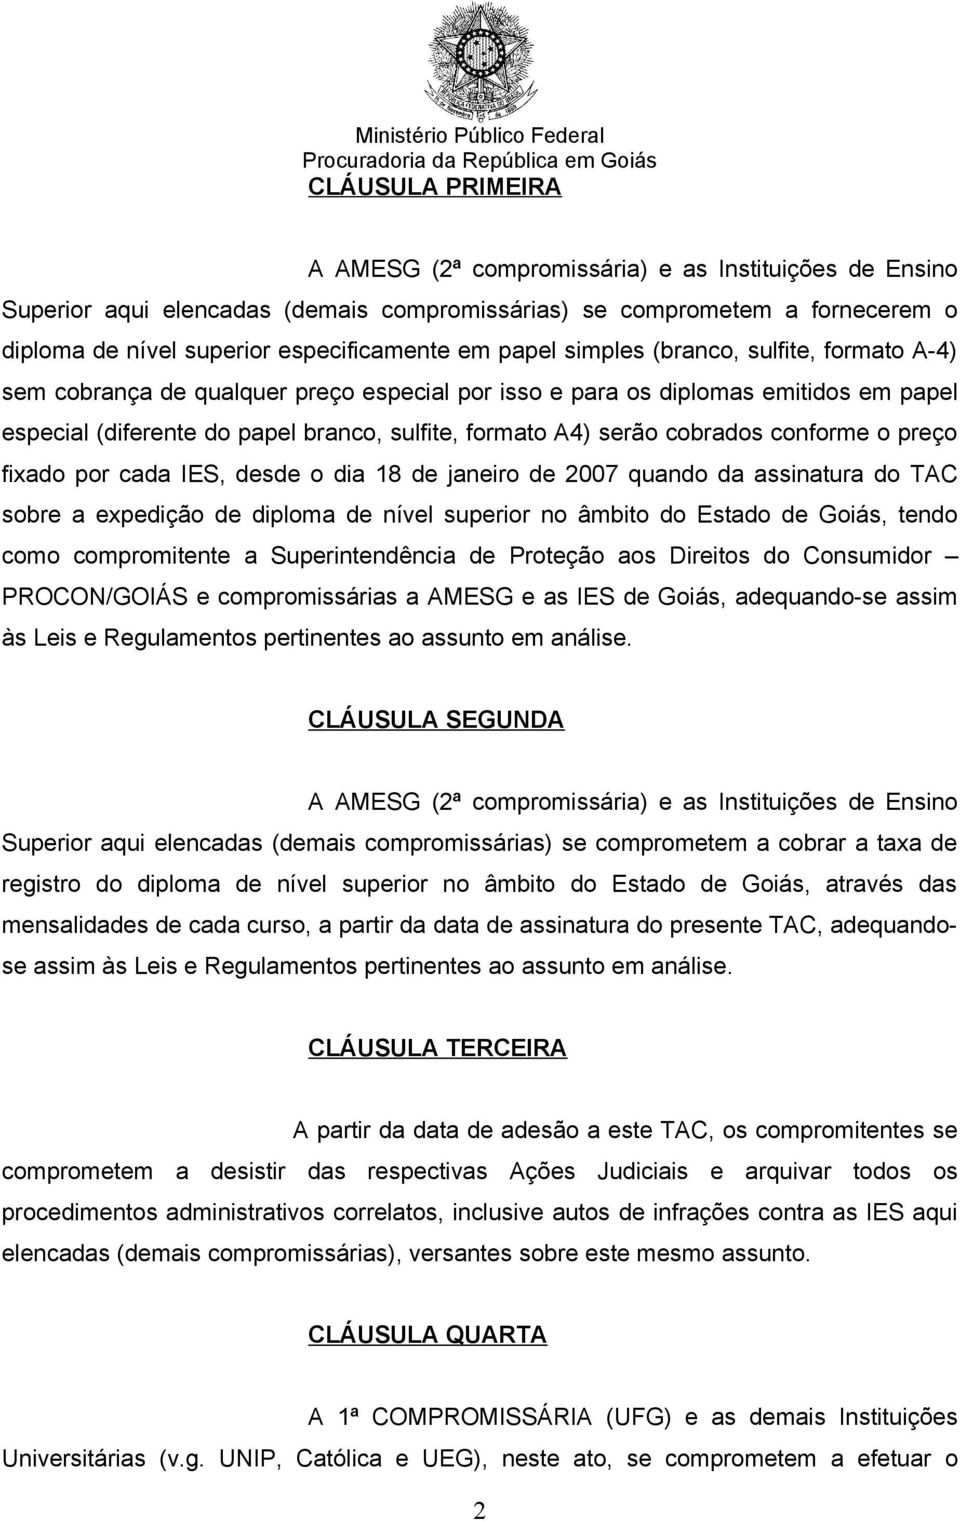 cobrados conforme o preço fixado por cada IES, desde o dia 18 de janeiro de 2007 quando da assinatura do TAC sobre a expedição de diploma de nível superior no âmbito do Estado de Goiás, tendo como